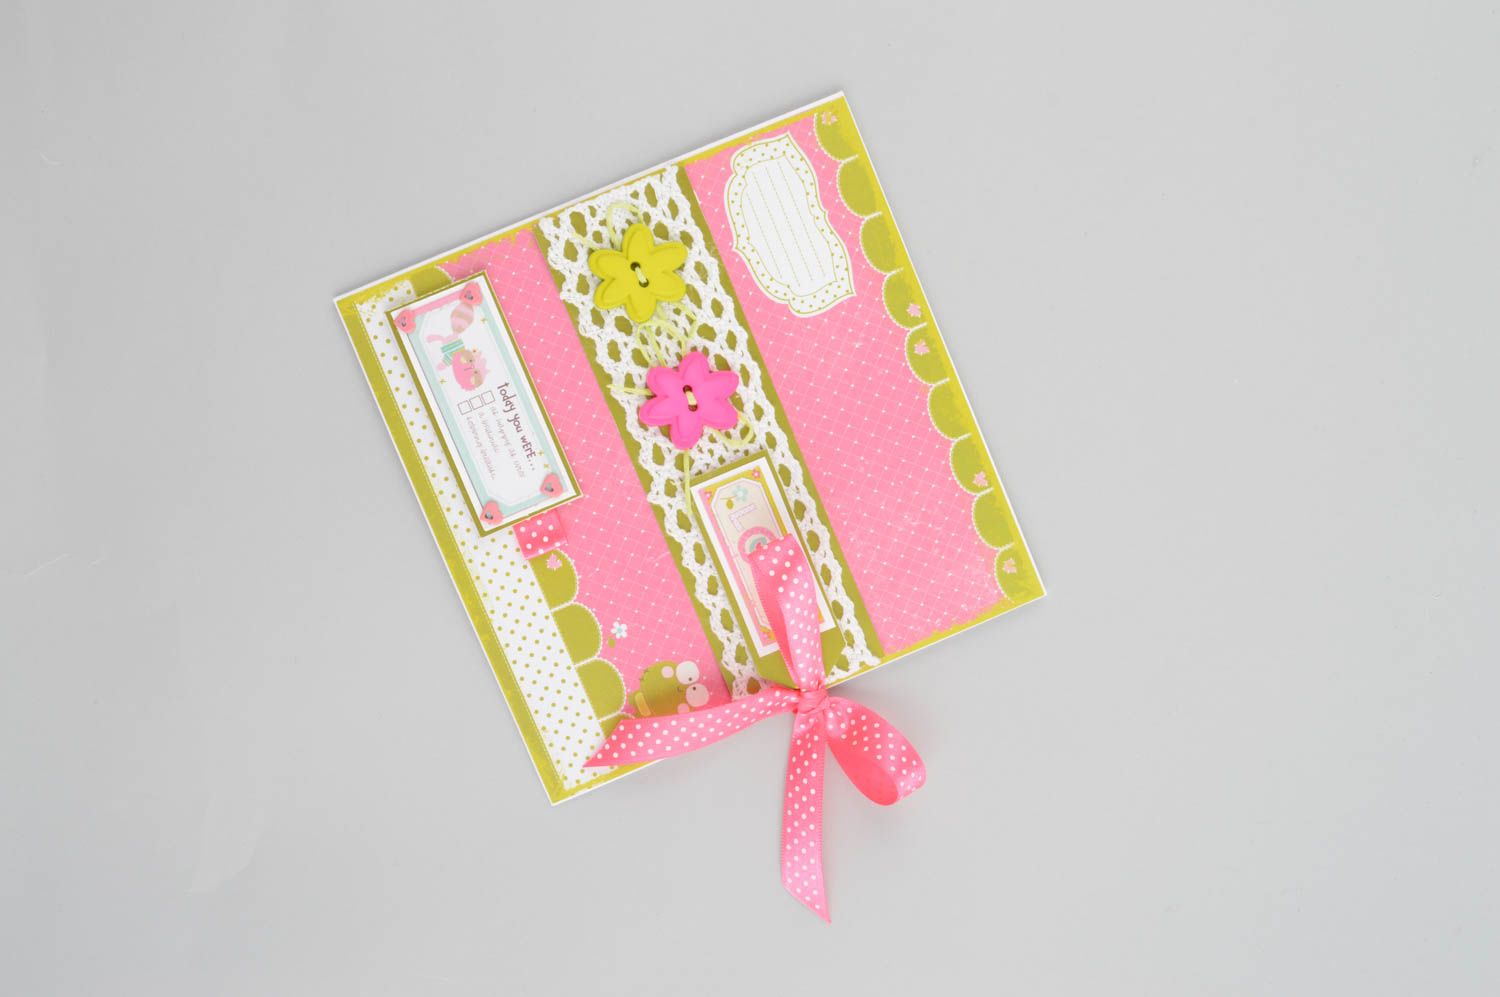 Handmade CD Hülle aus Papier kreatives Geschenk schöne Verpackung rosa foto 5